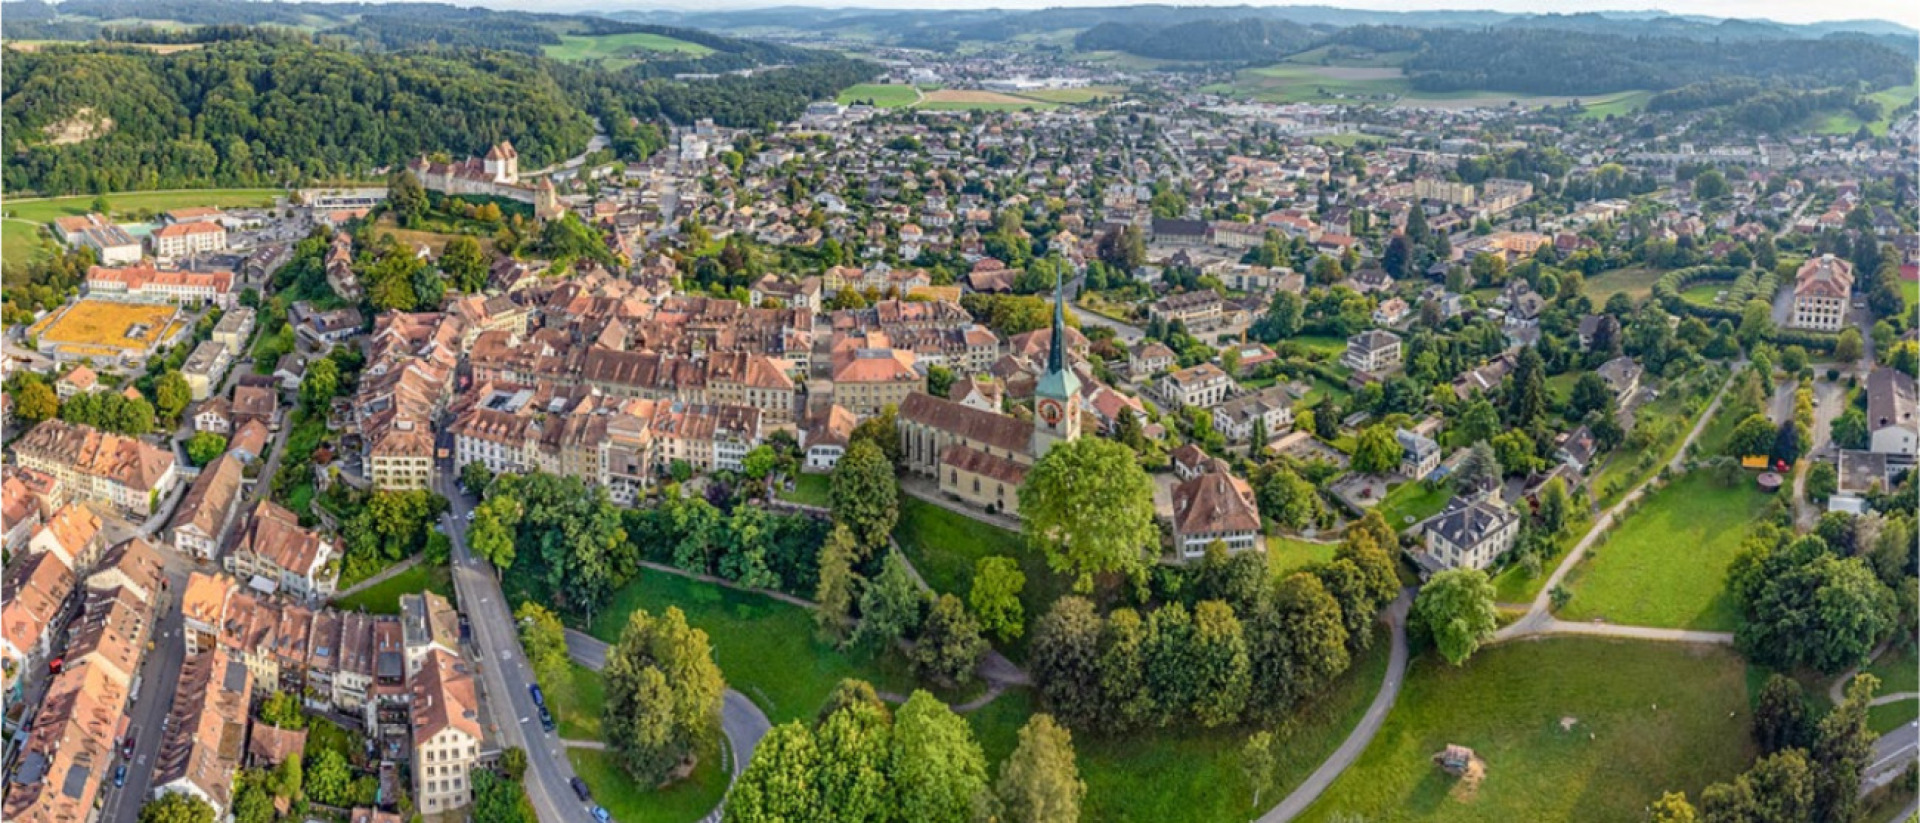 Burgdorf hat das Dorf im Namen, ist aber eigentlich eine Stadt. Dafür wird die Burg (linker oberer Bildrand) Schloss genannt. BILD: GDMPRO S.R.O. / STOCK.ADOBE.COM